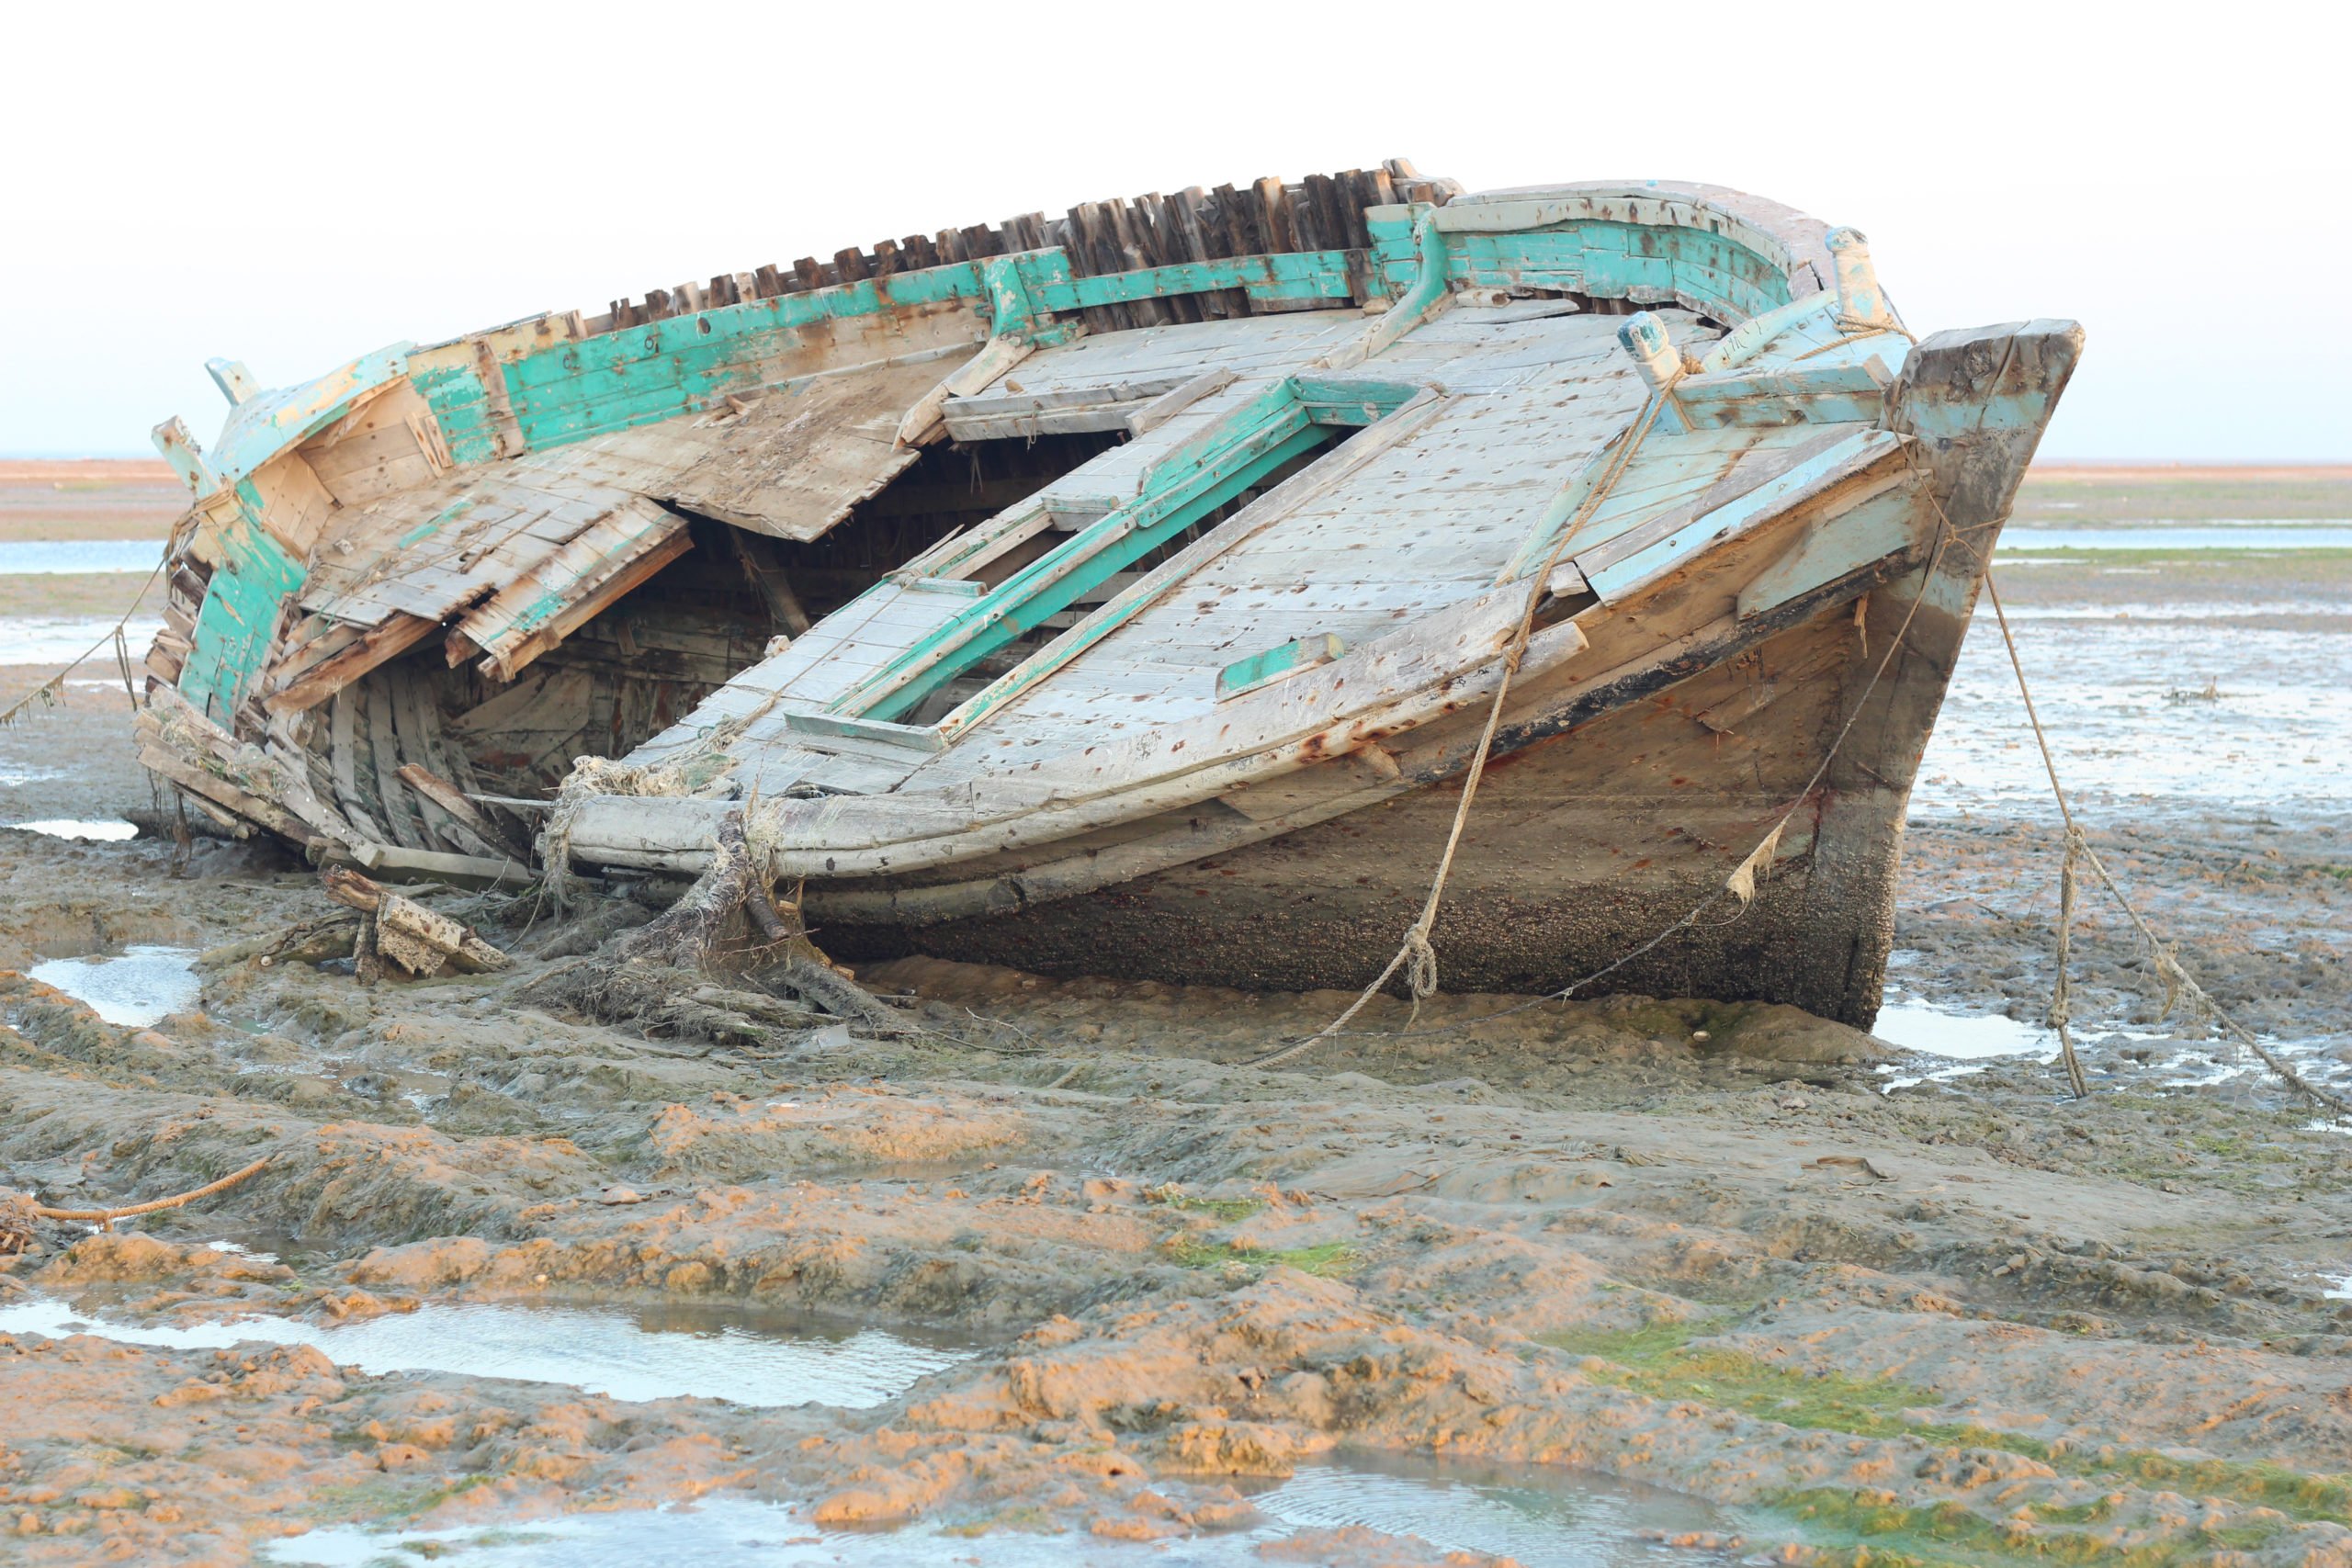 derelict fishing boat near Gwadar on Pakistan's Arabian Sea coast.